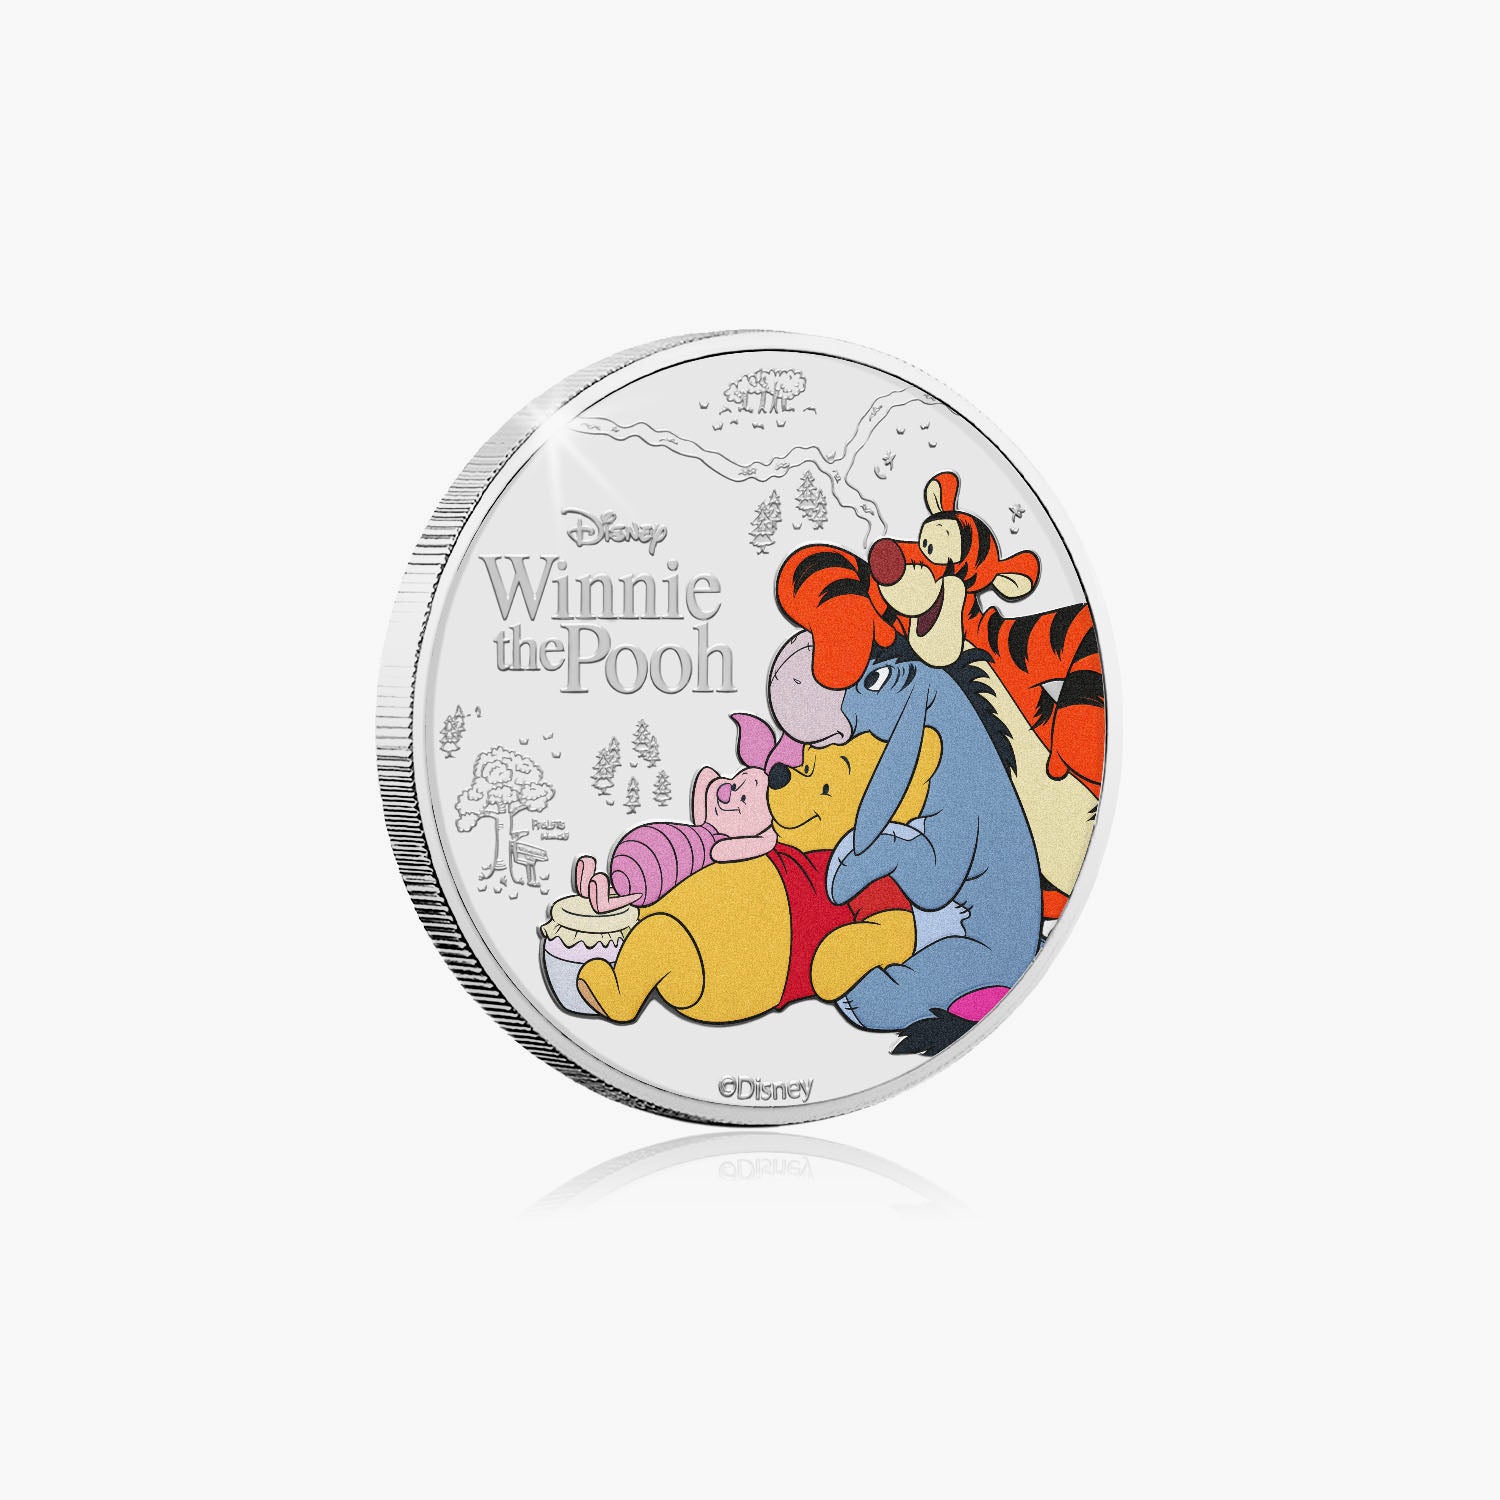 Winnie the Pooh & Friends 2023 £5 BU Colour Coin